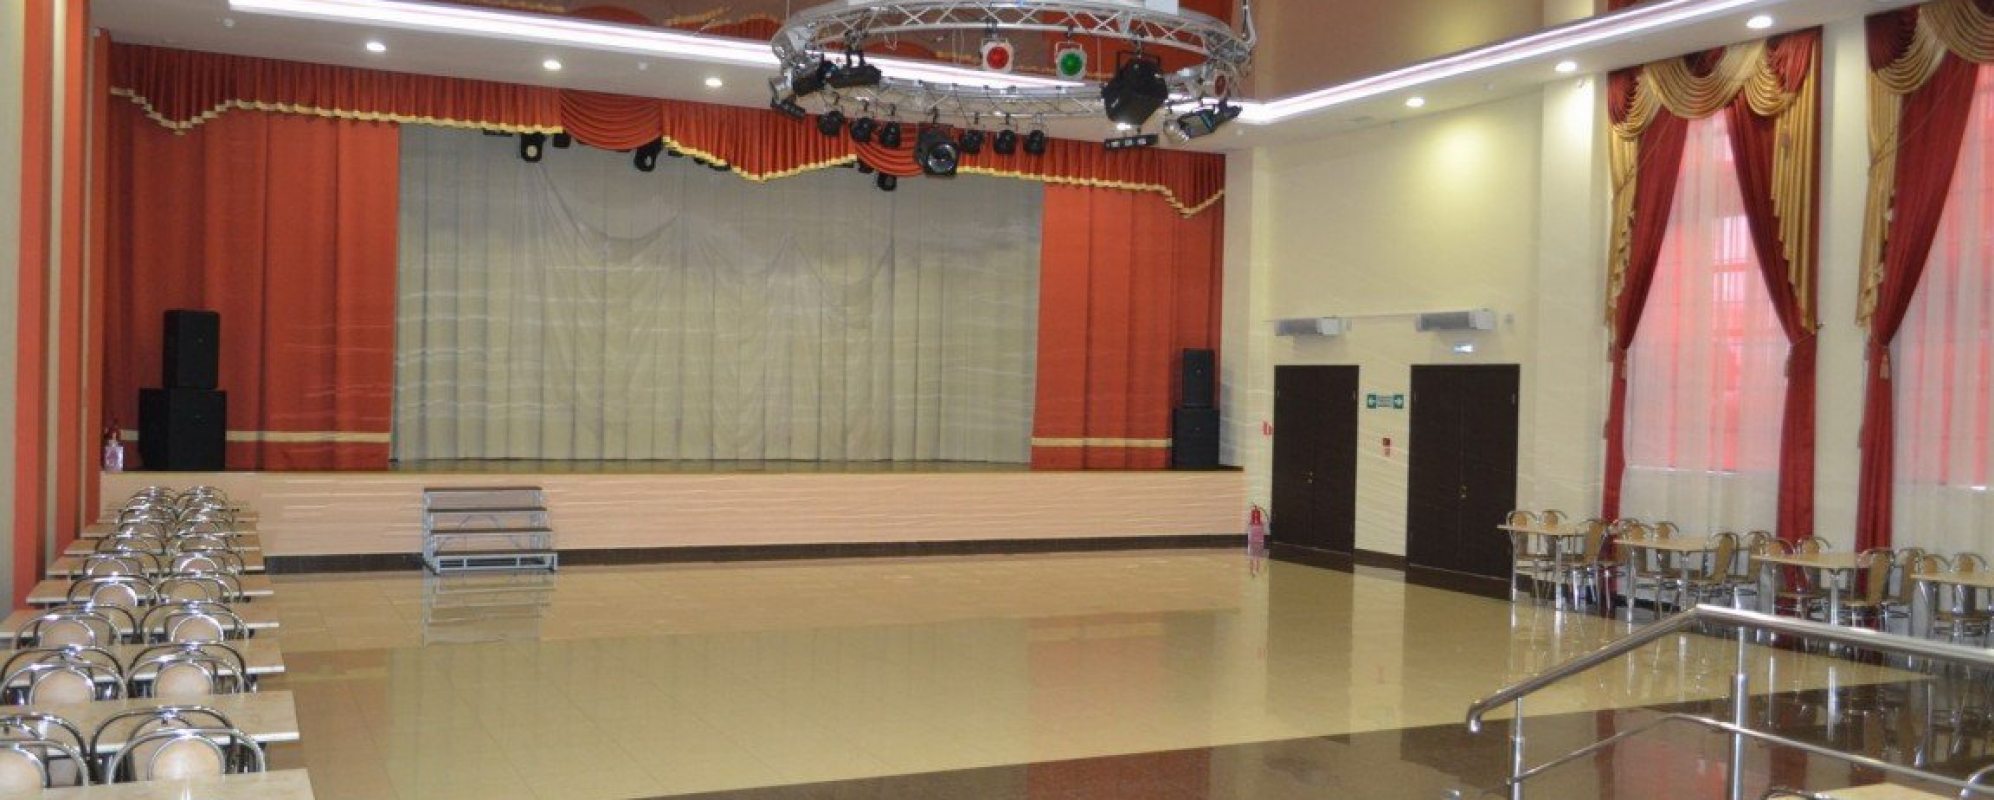 Фотографии танцевального зала Танцевальный зал РДК Юность